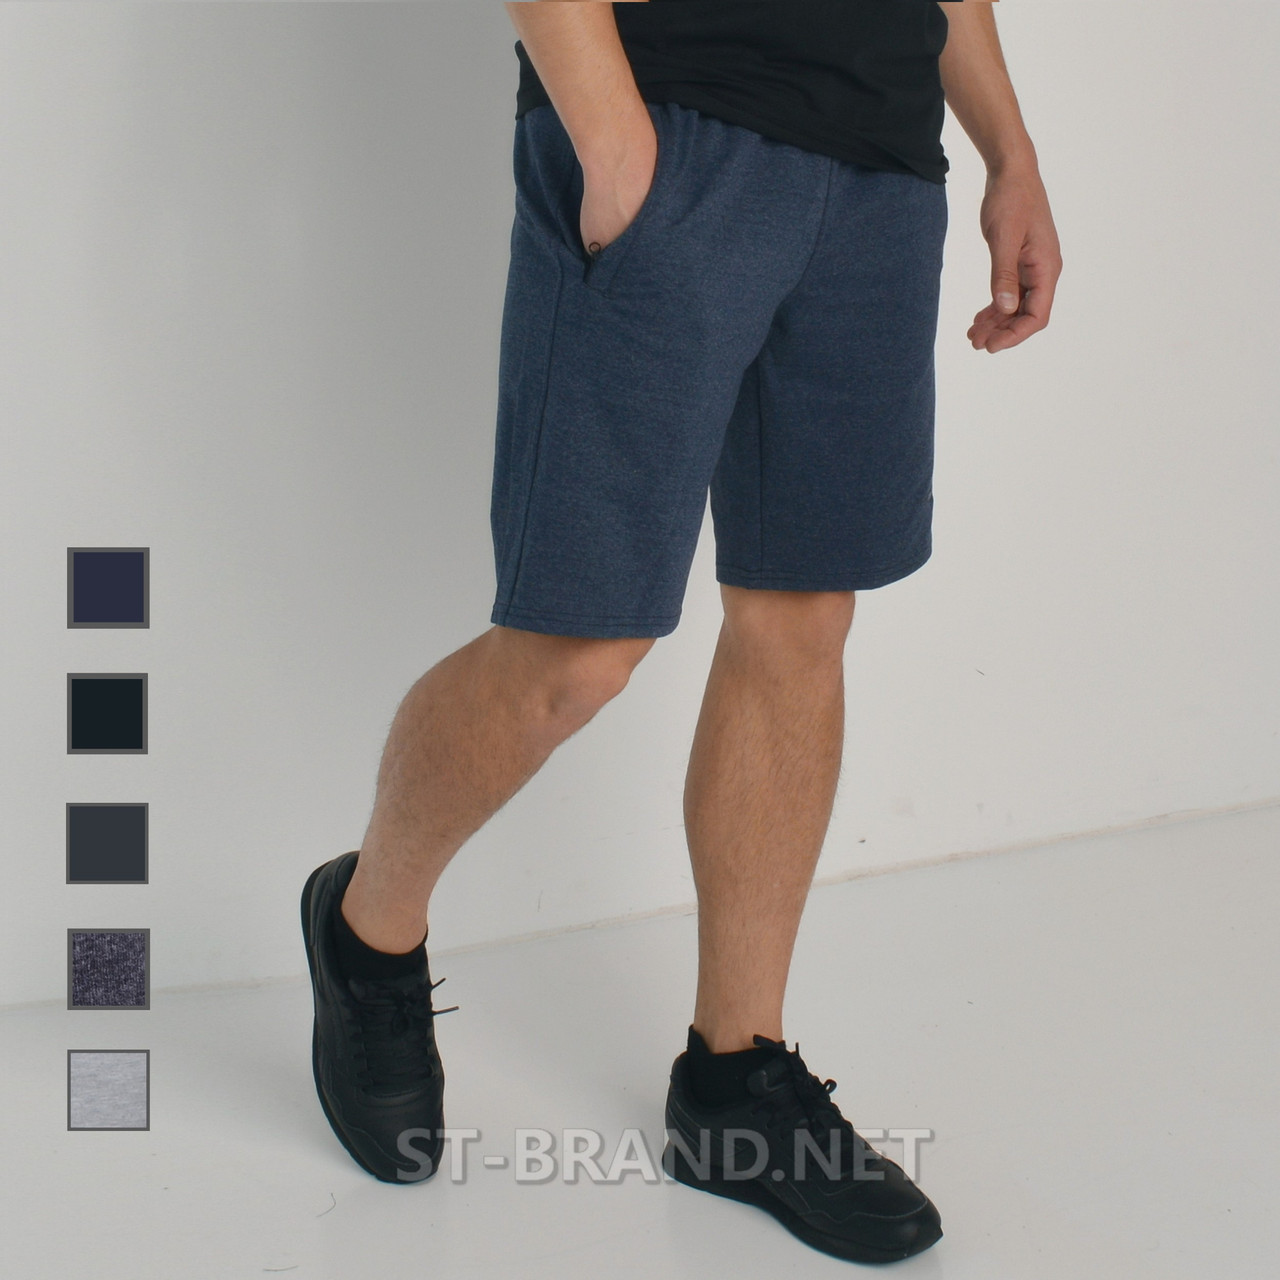 48,50. Чоловічі трикотажні зручні шорти ST-BRAND - сині (джинс)